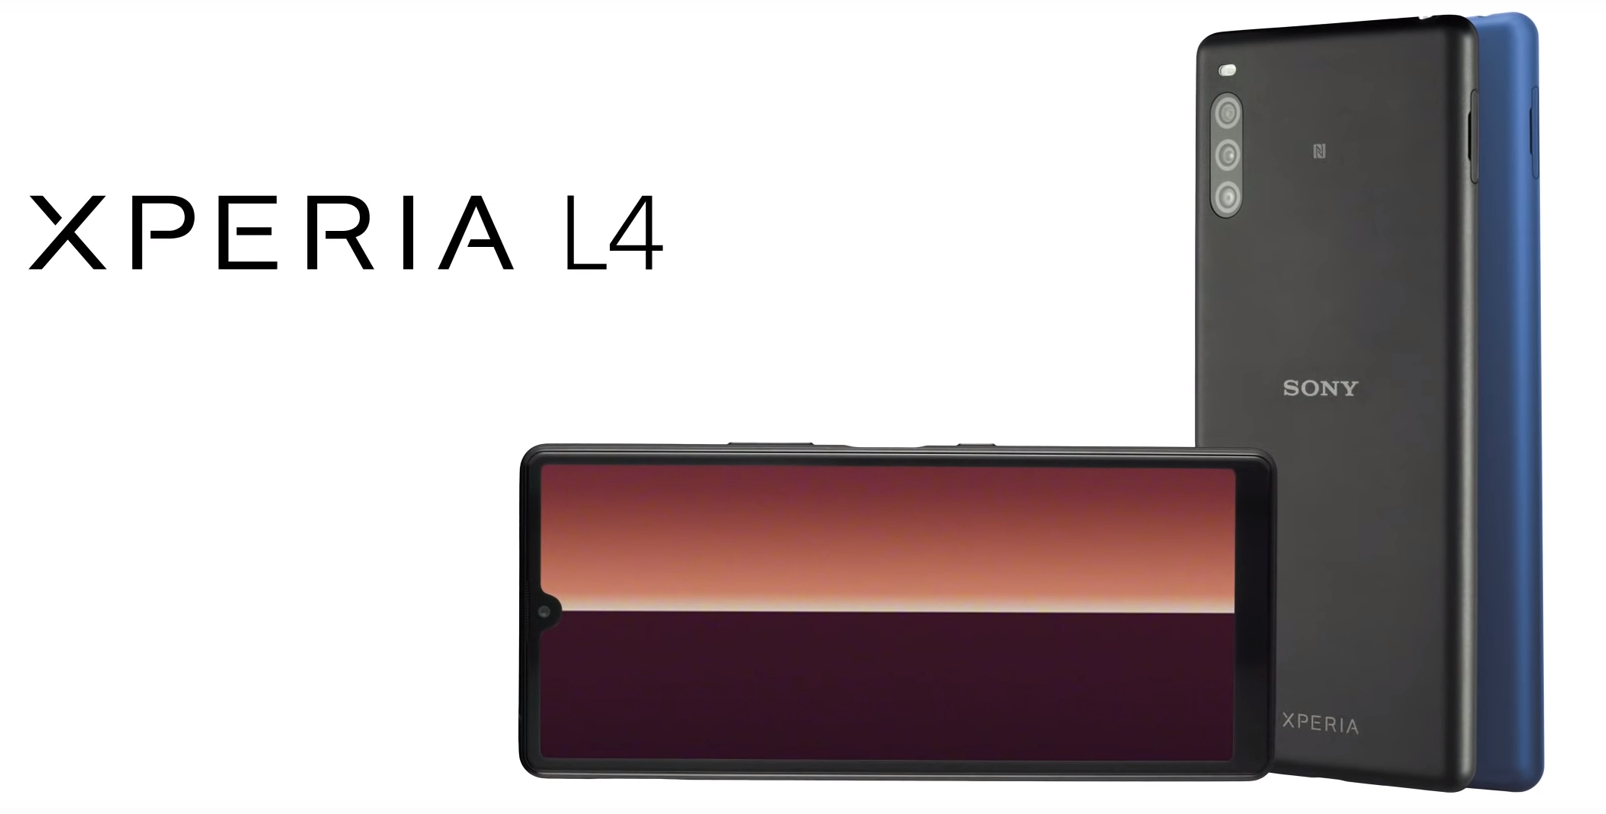 Sony chính thức ra
mắt Xperia L4: Smartphone đầu tiên của Sony có màn hình giọt
nước, cấu hình tầm trung